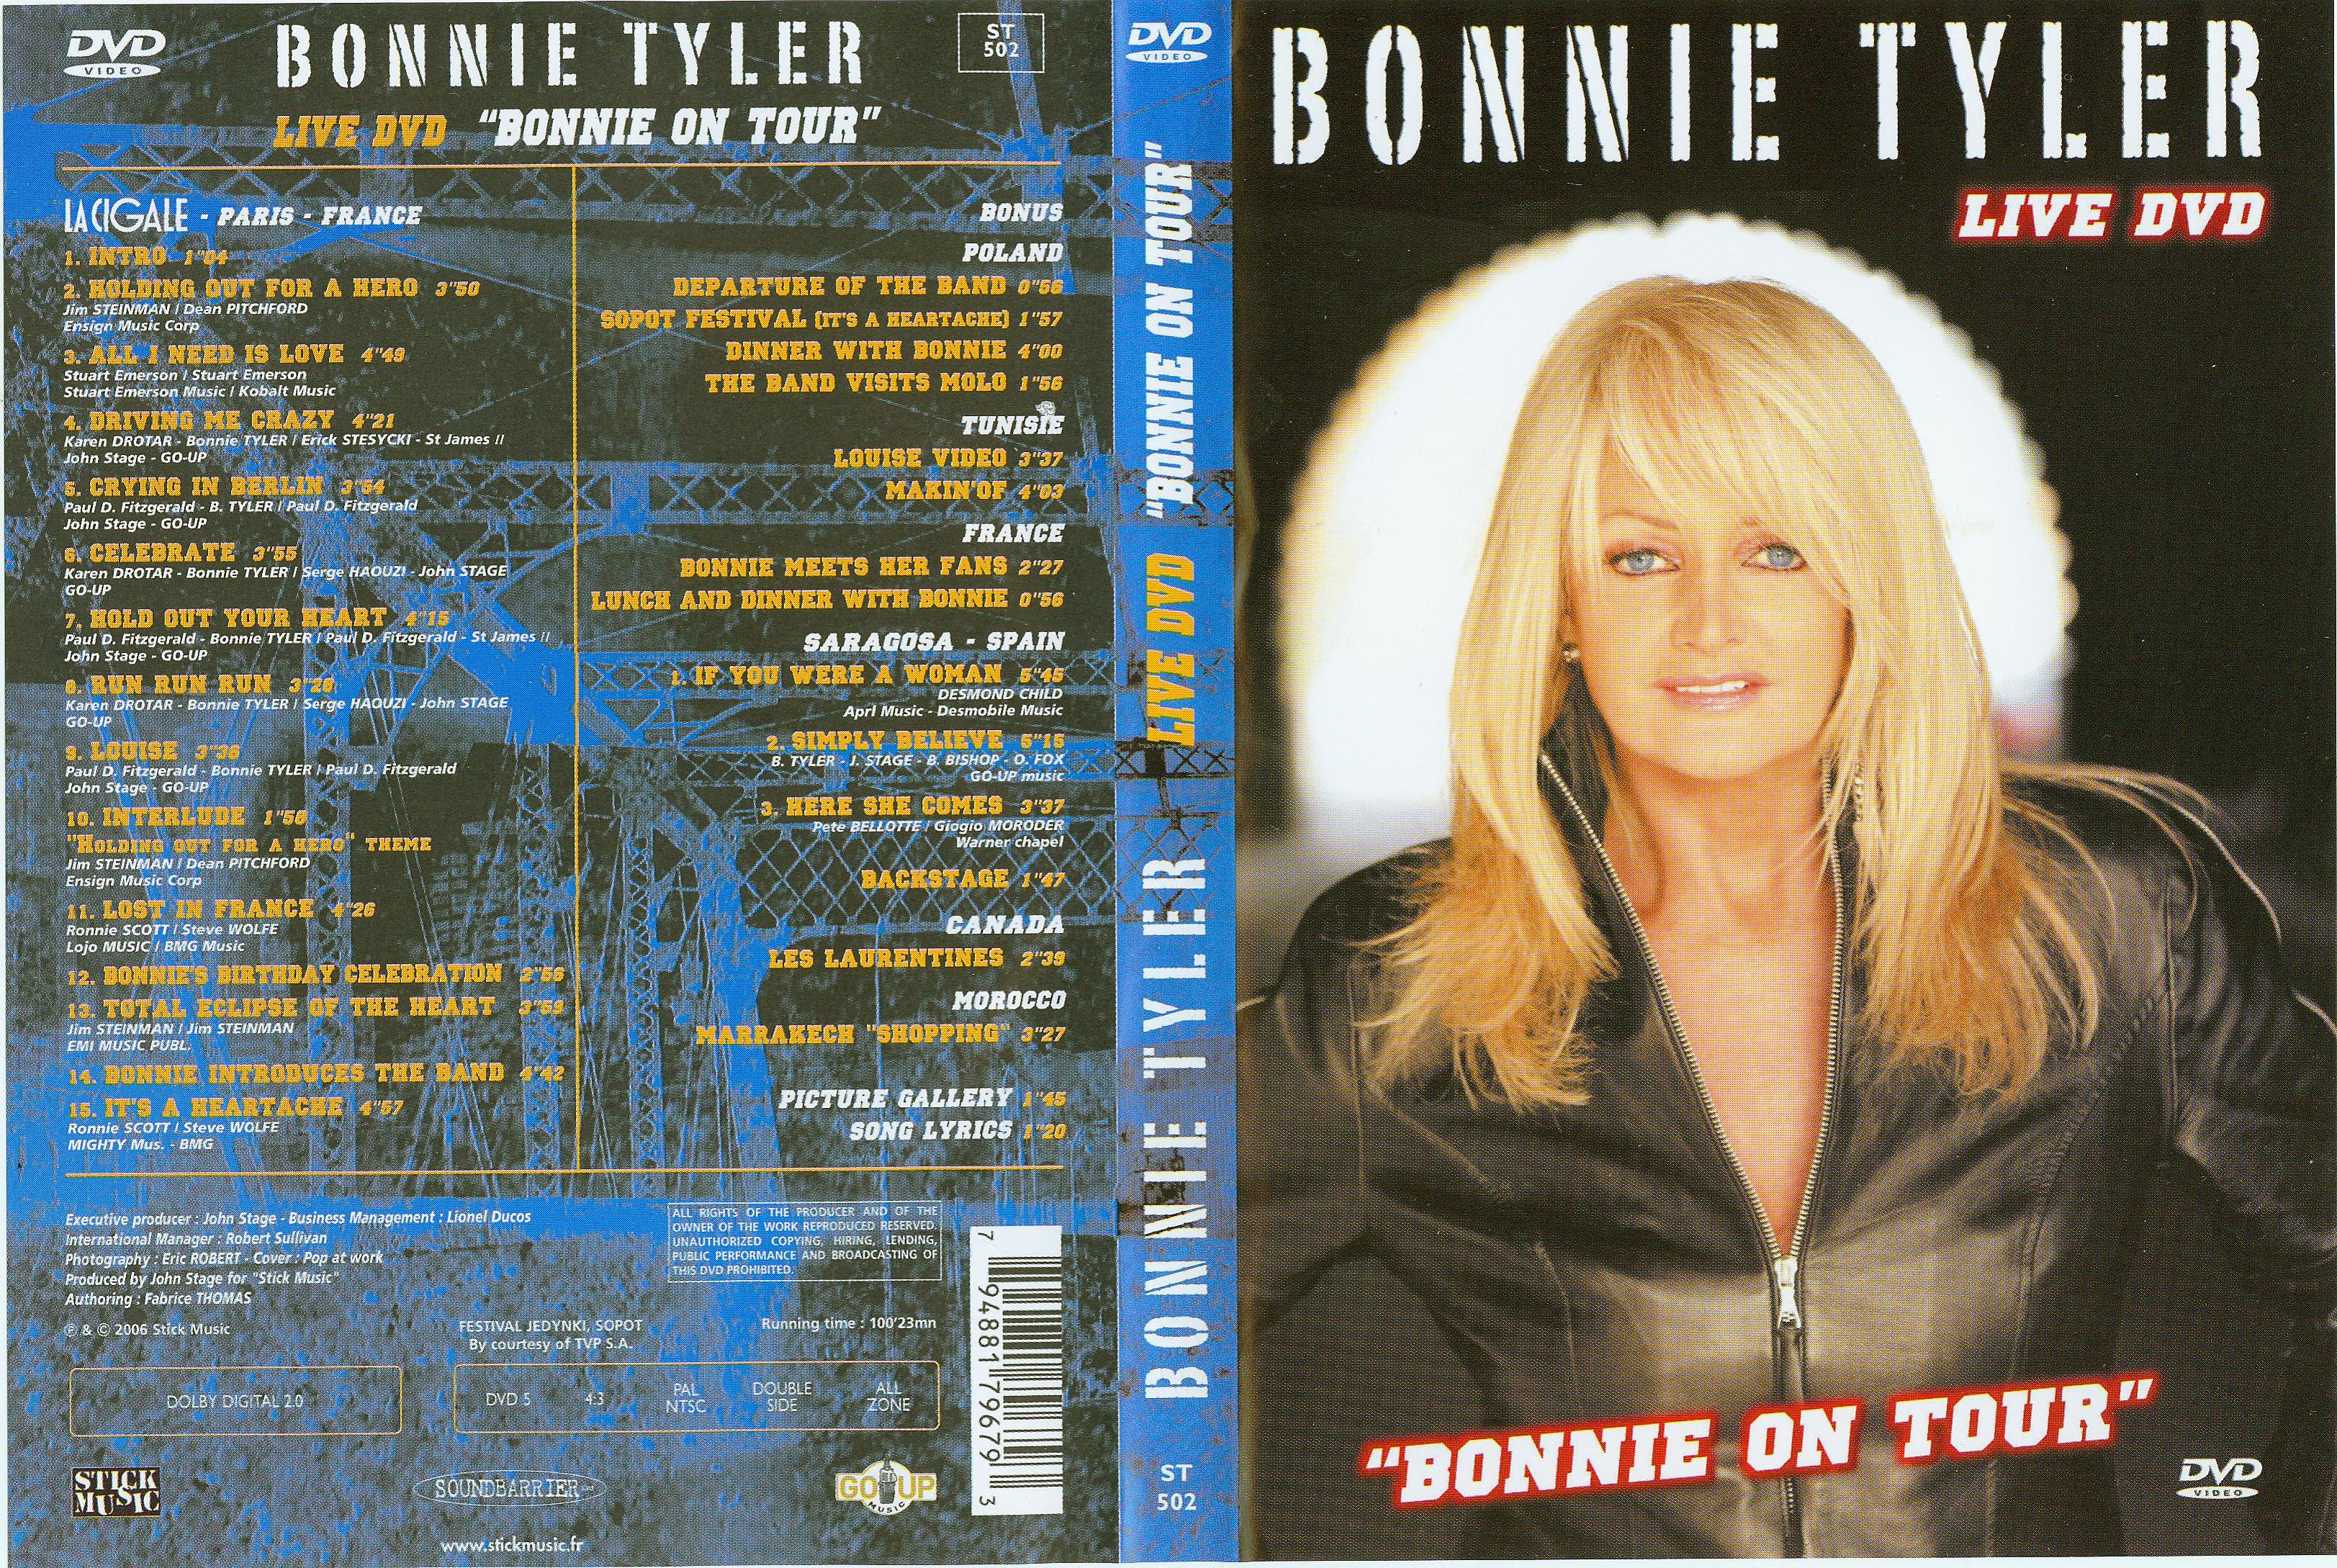 Jaquette DVD Bonnie Tyler live dvd Bonnie on tour